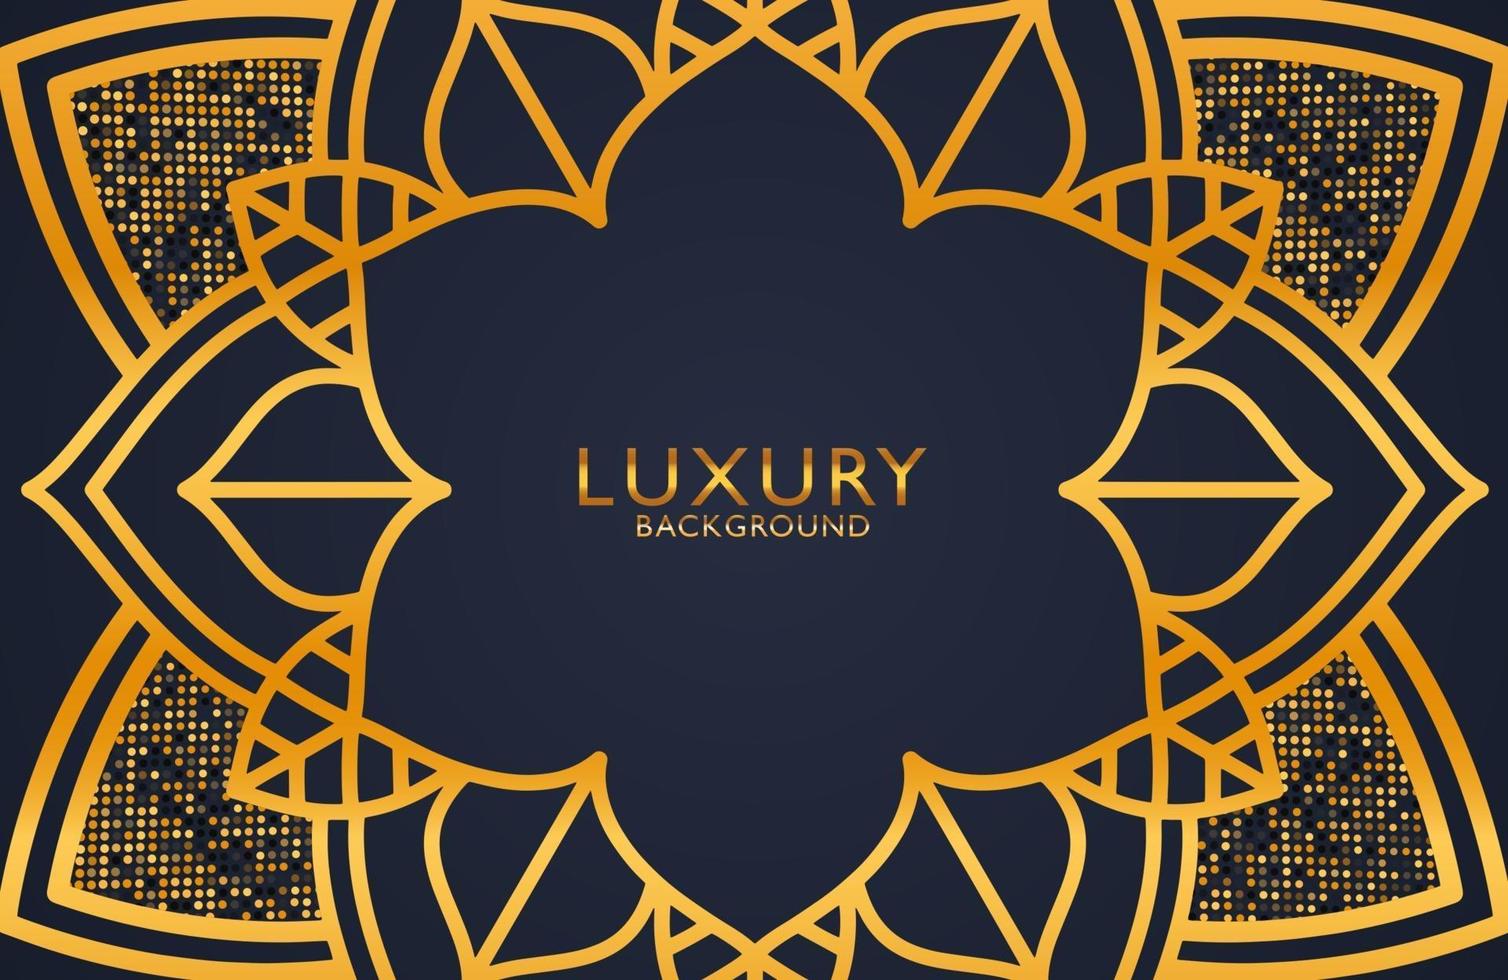 Fondo de diseño de mandala ornamental de lujo en color dorado. elemento de diseño gráfico para invitación, portada, fondo. decoración elegante vector